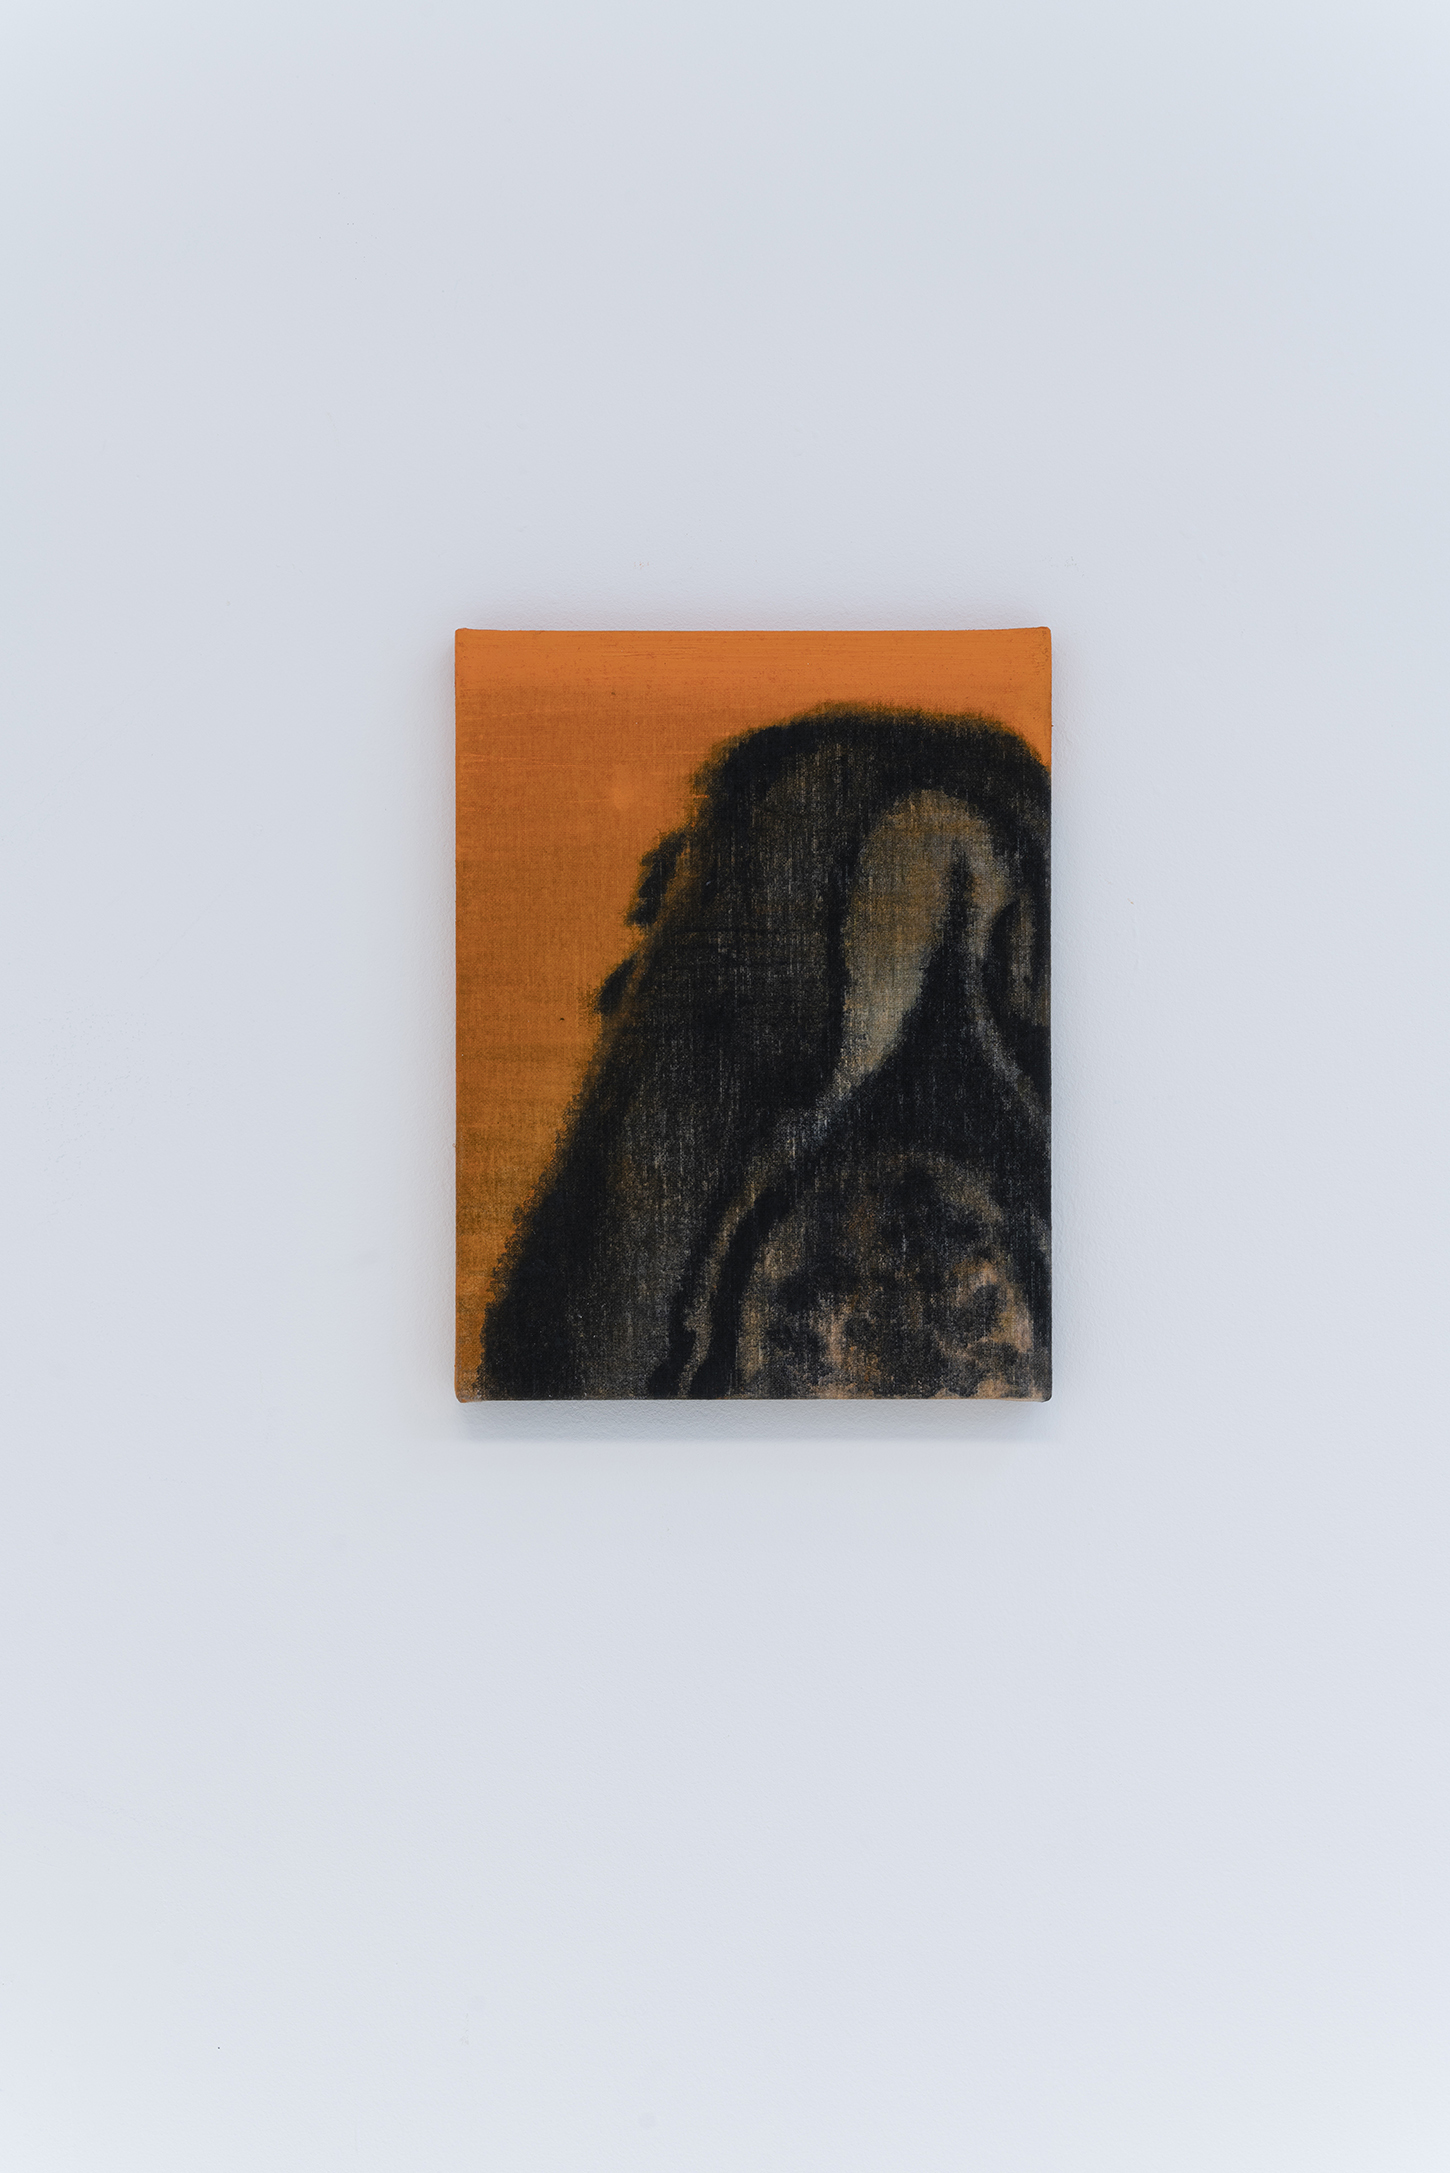 Hadrien Jacquelet, Untitled (Portrait), 2021, Oil on canvas, 37 x 25 cm